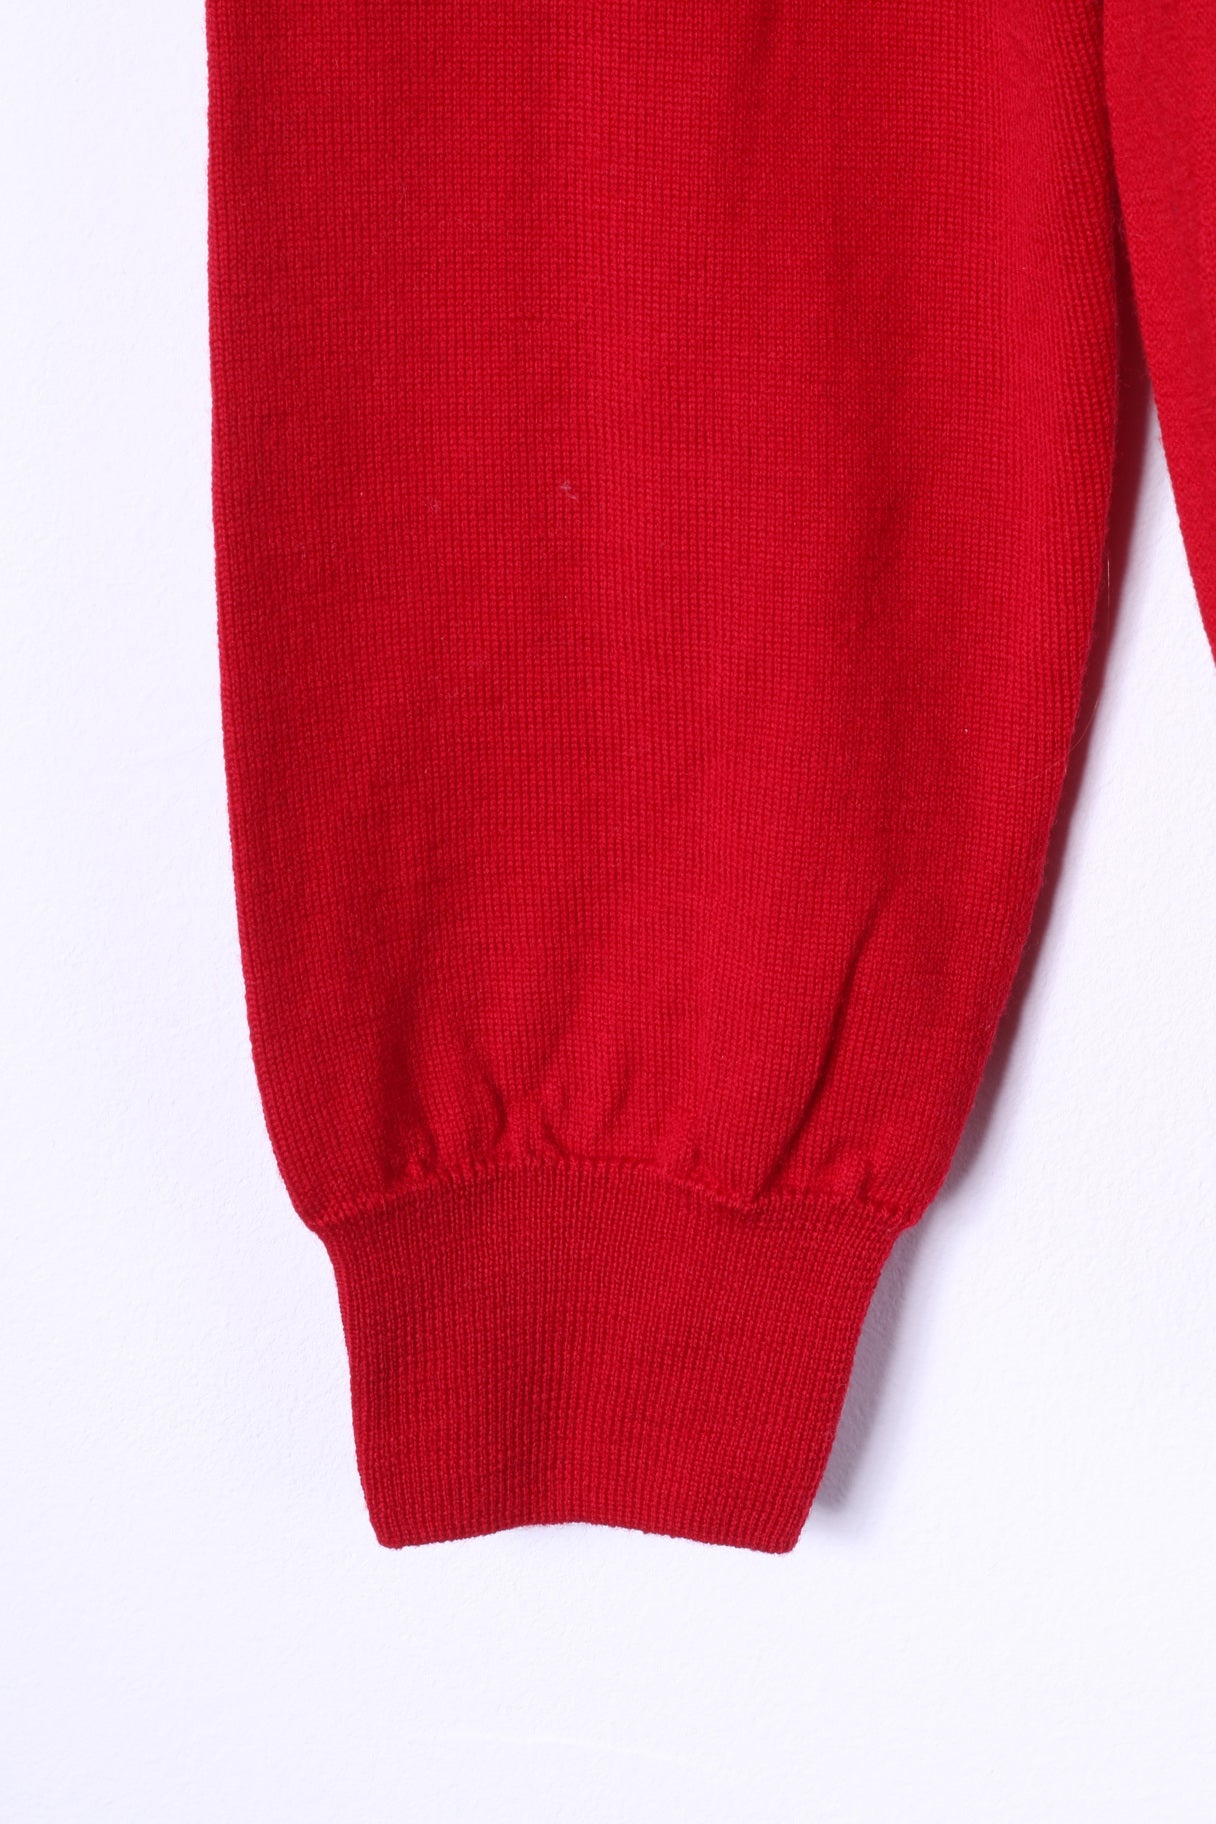 BECOME Maglione da uomo L rosso 100% lana morbido maglione con scollo a V